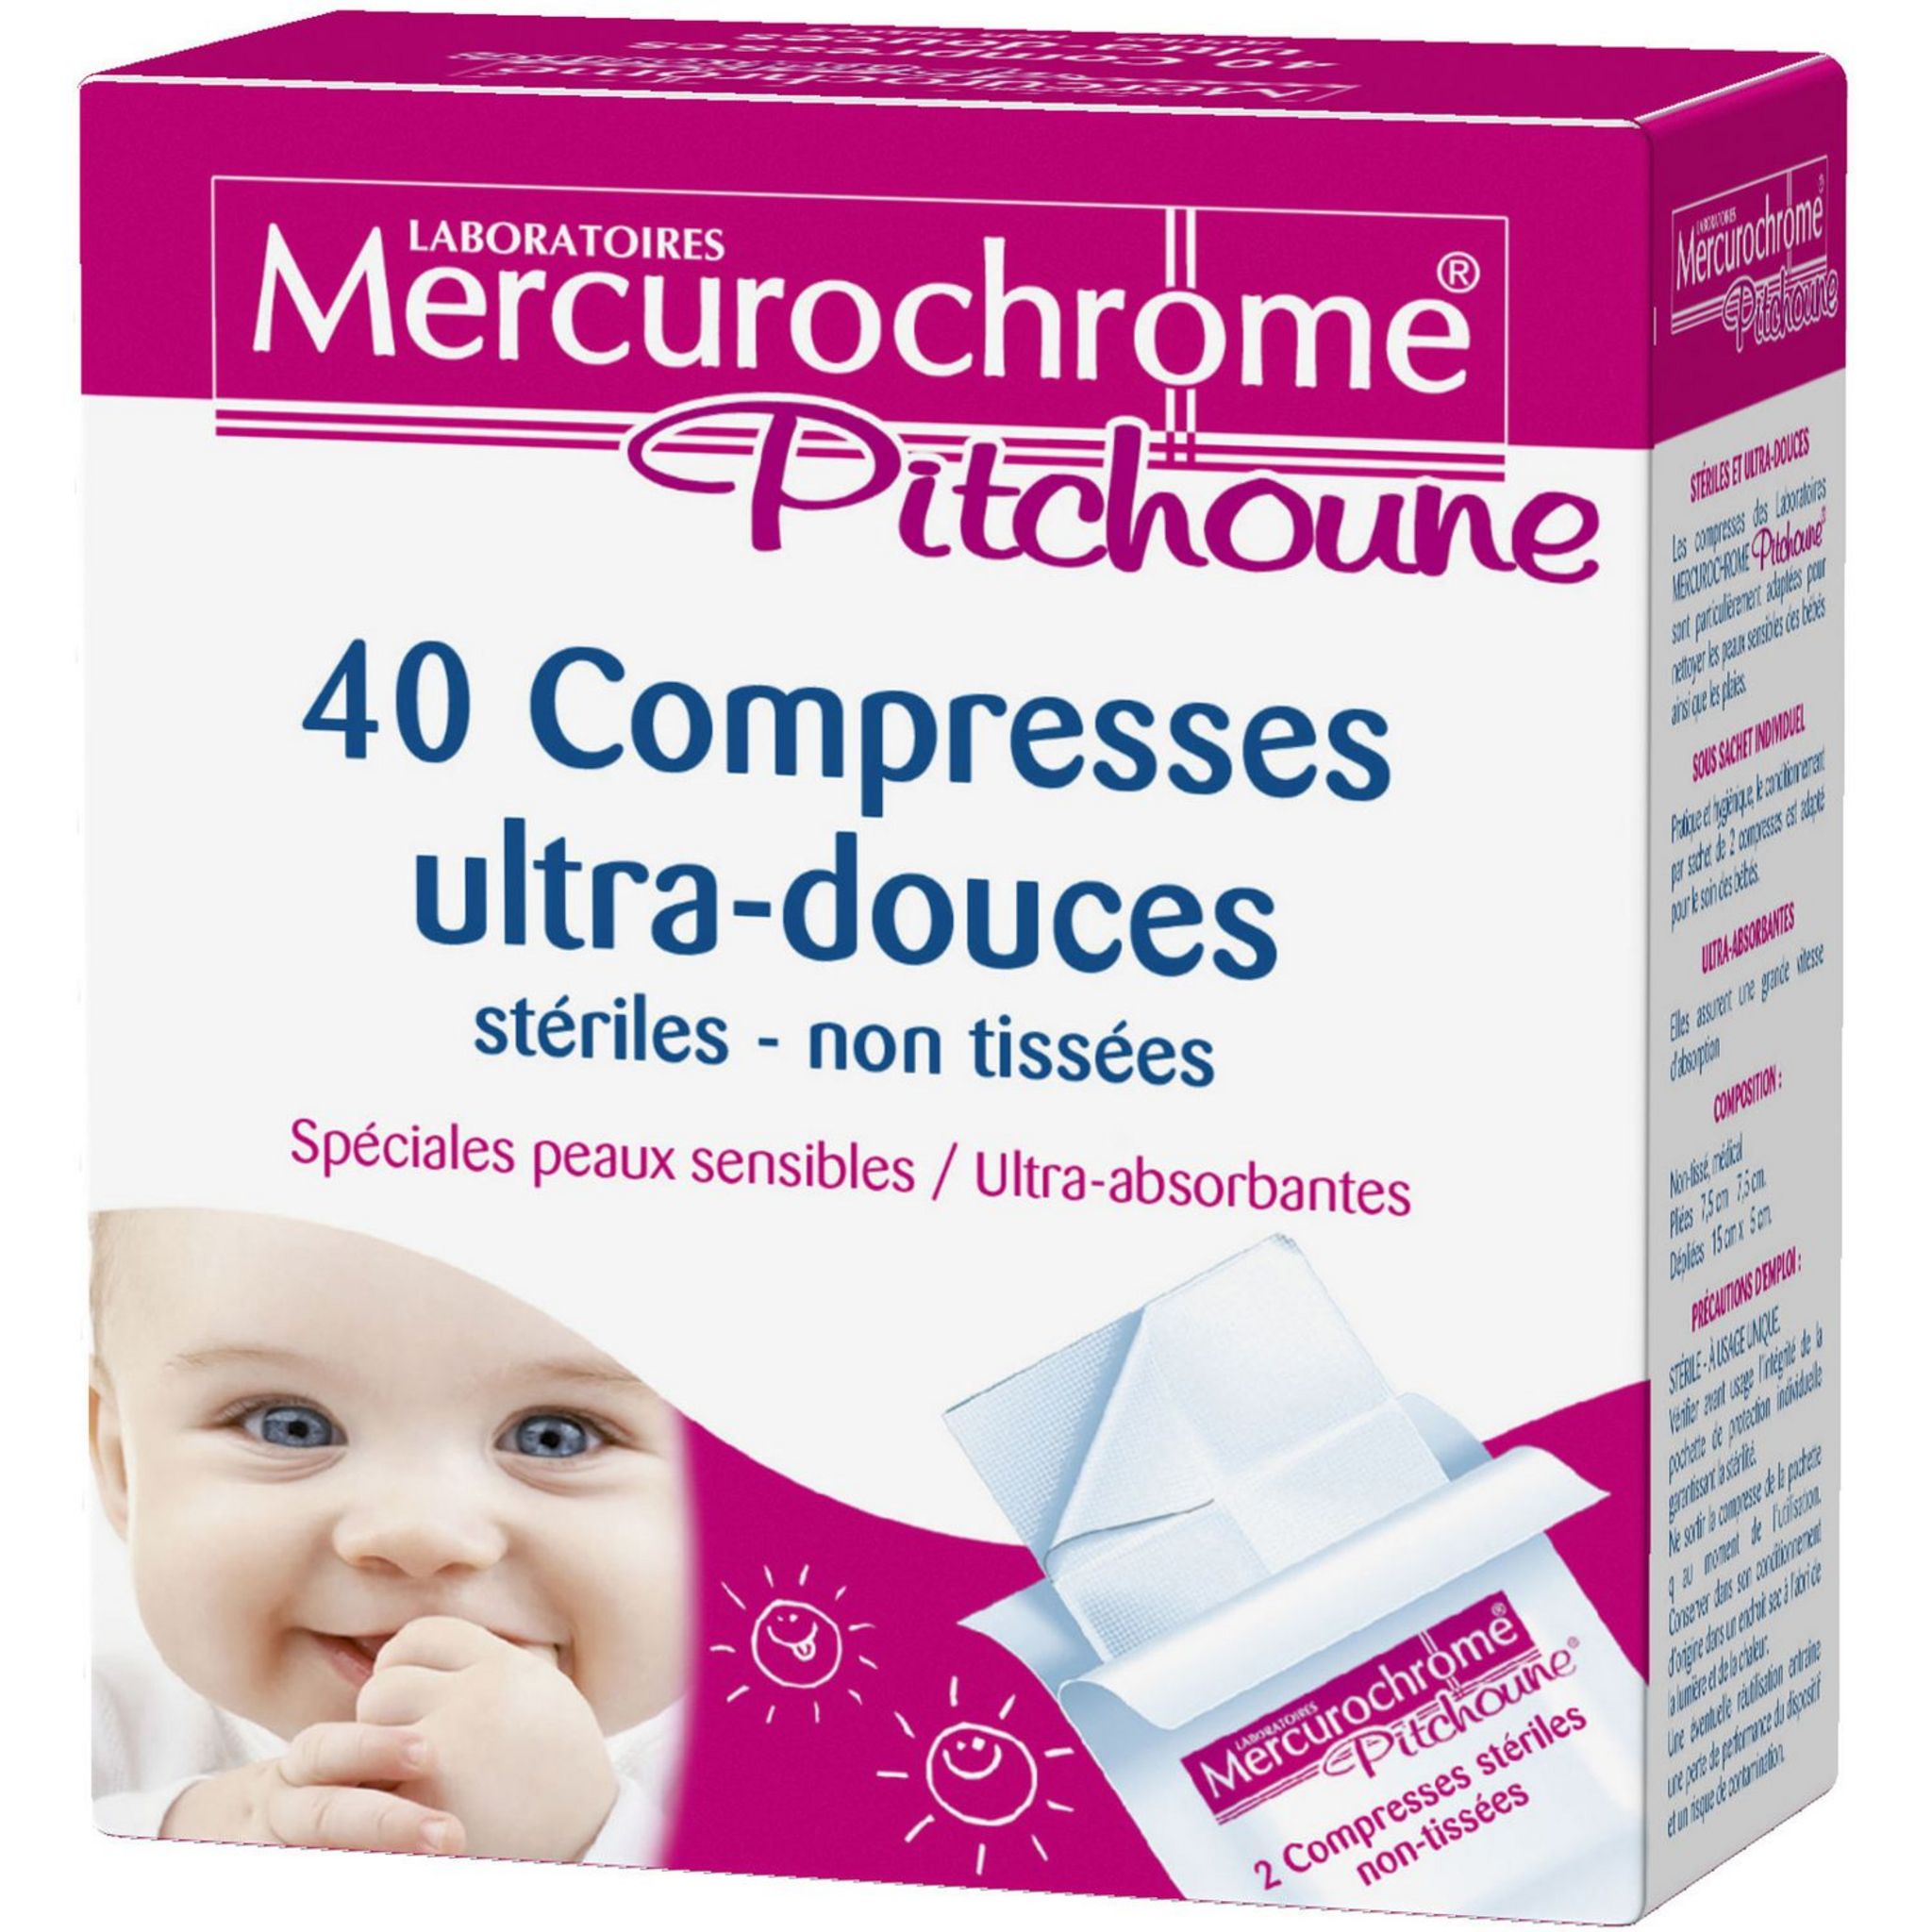 MERCUROCHROME Pitchoune compresses stériles ultra-douces 40